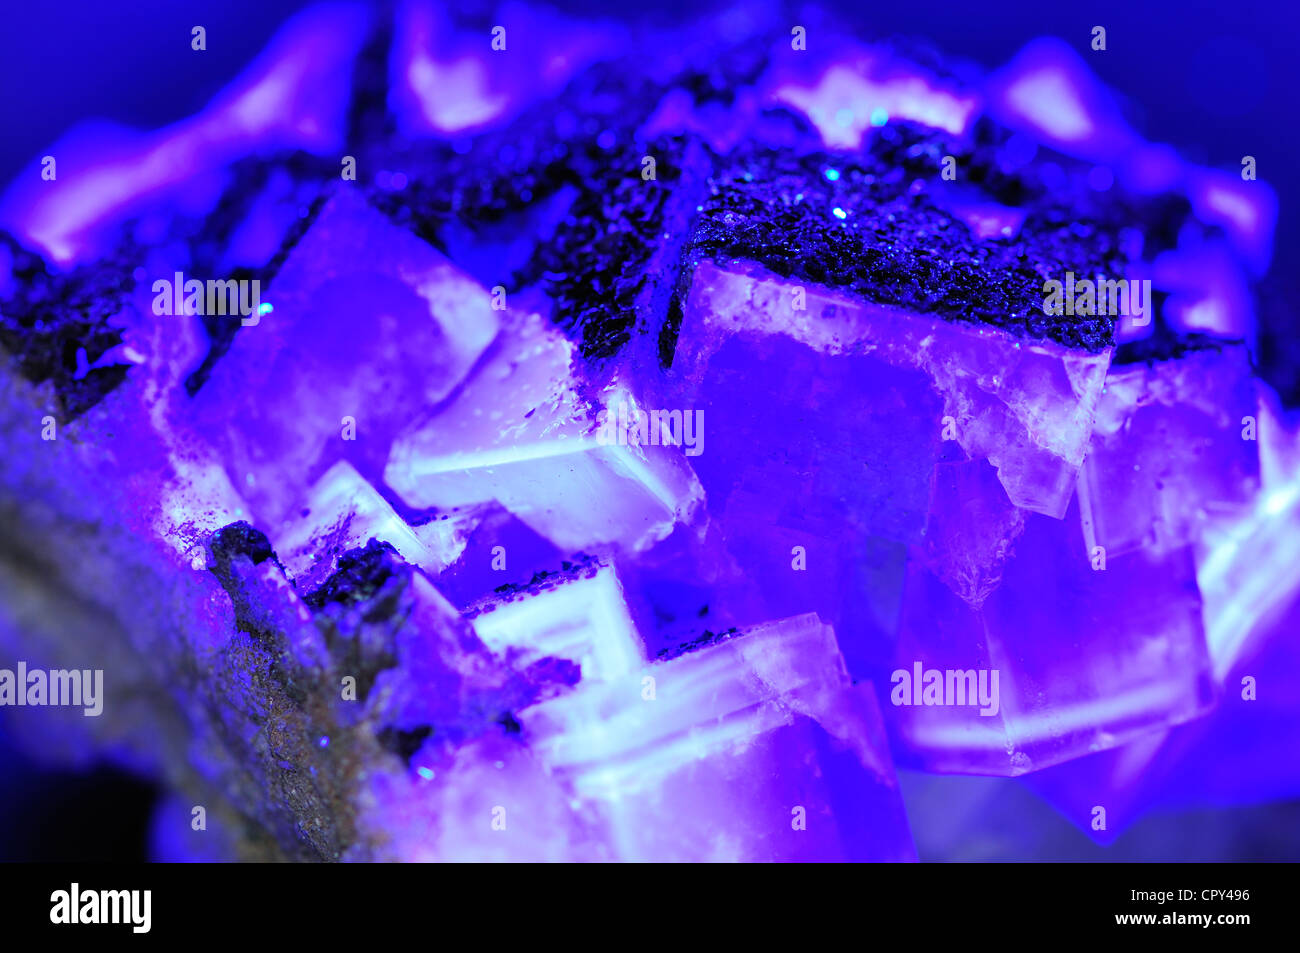 Flourite de calcium (cristaux de flouride) fluorescence sous la lumière ultraviolette Banque D'Images